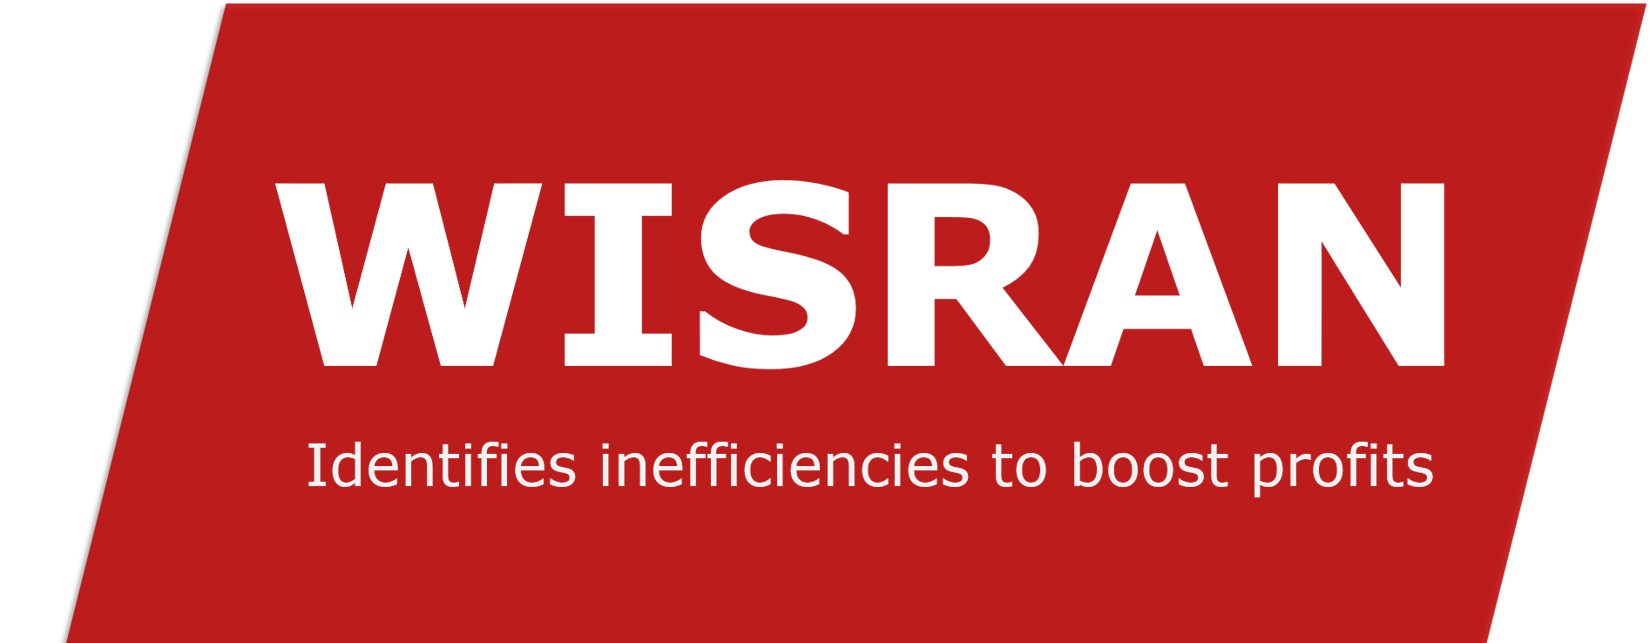 WISRAN Logo